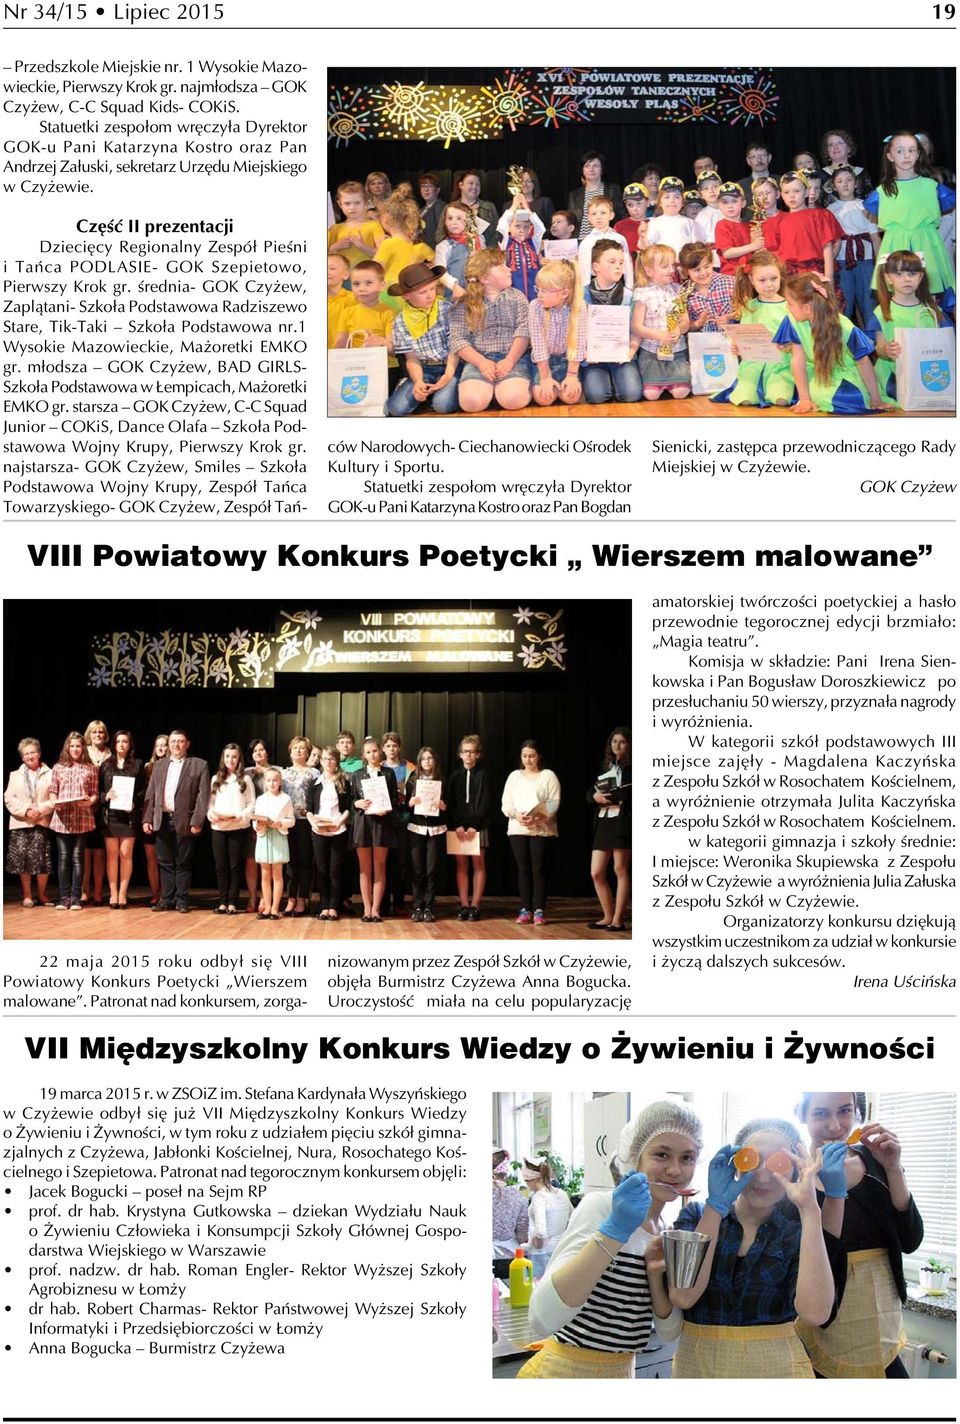 Część II prezentacji Dziecięcy Regionalny Zespół Pieśni i Tańca PODLASIE- GOK Szepietowo, Pierwszy Krok gr.